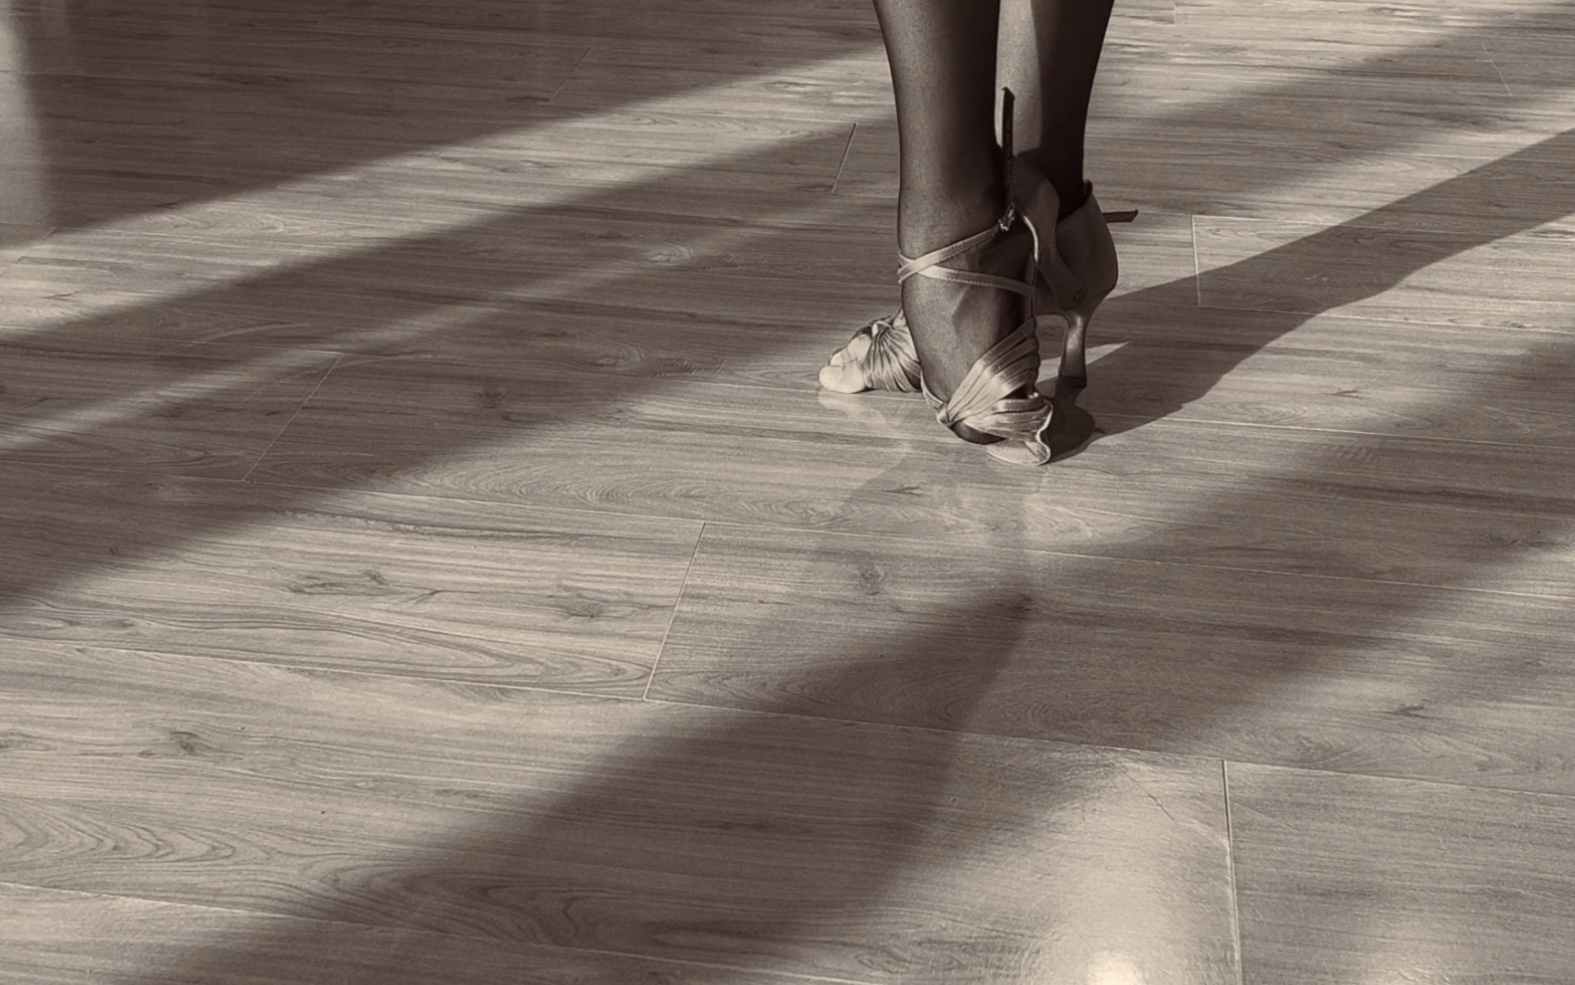 喜欢的是摩擦地板的触感是那种简单干净纯洁的美想要表达的是舞蹈真正的美感而不是那些花里胡哨的东西